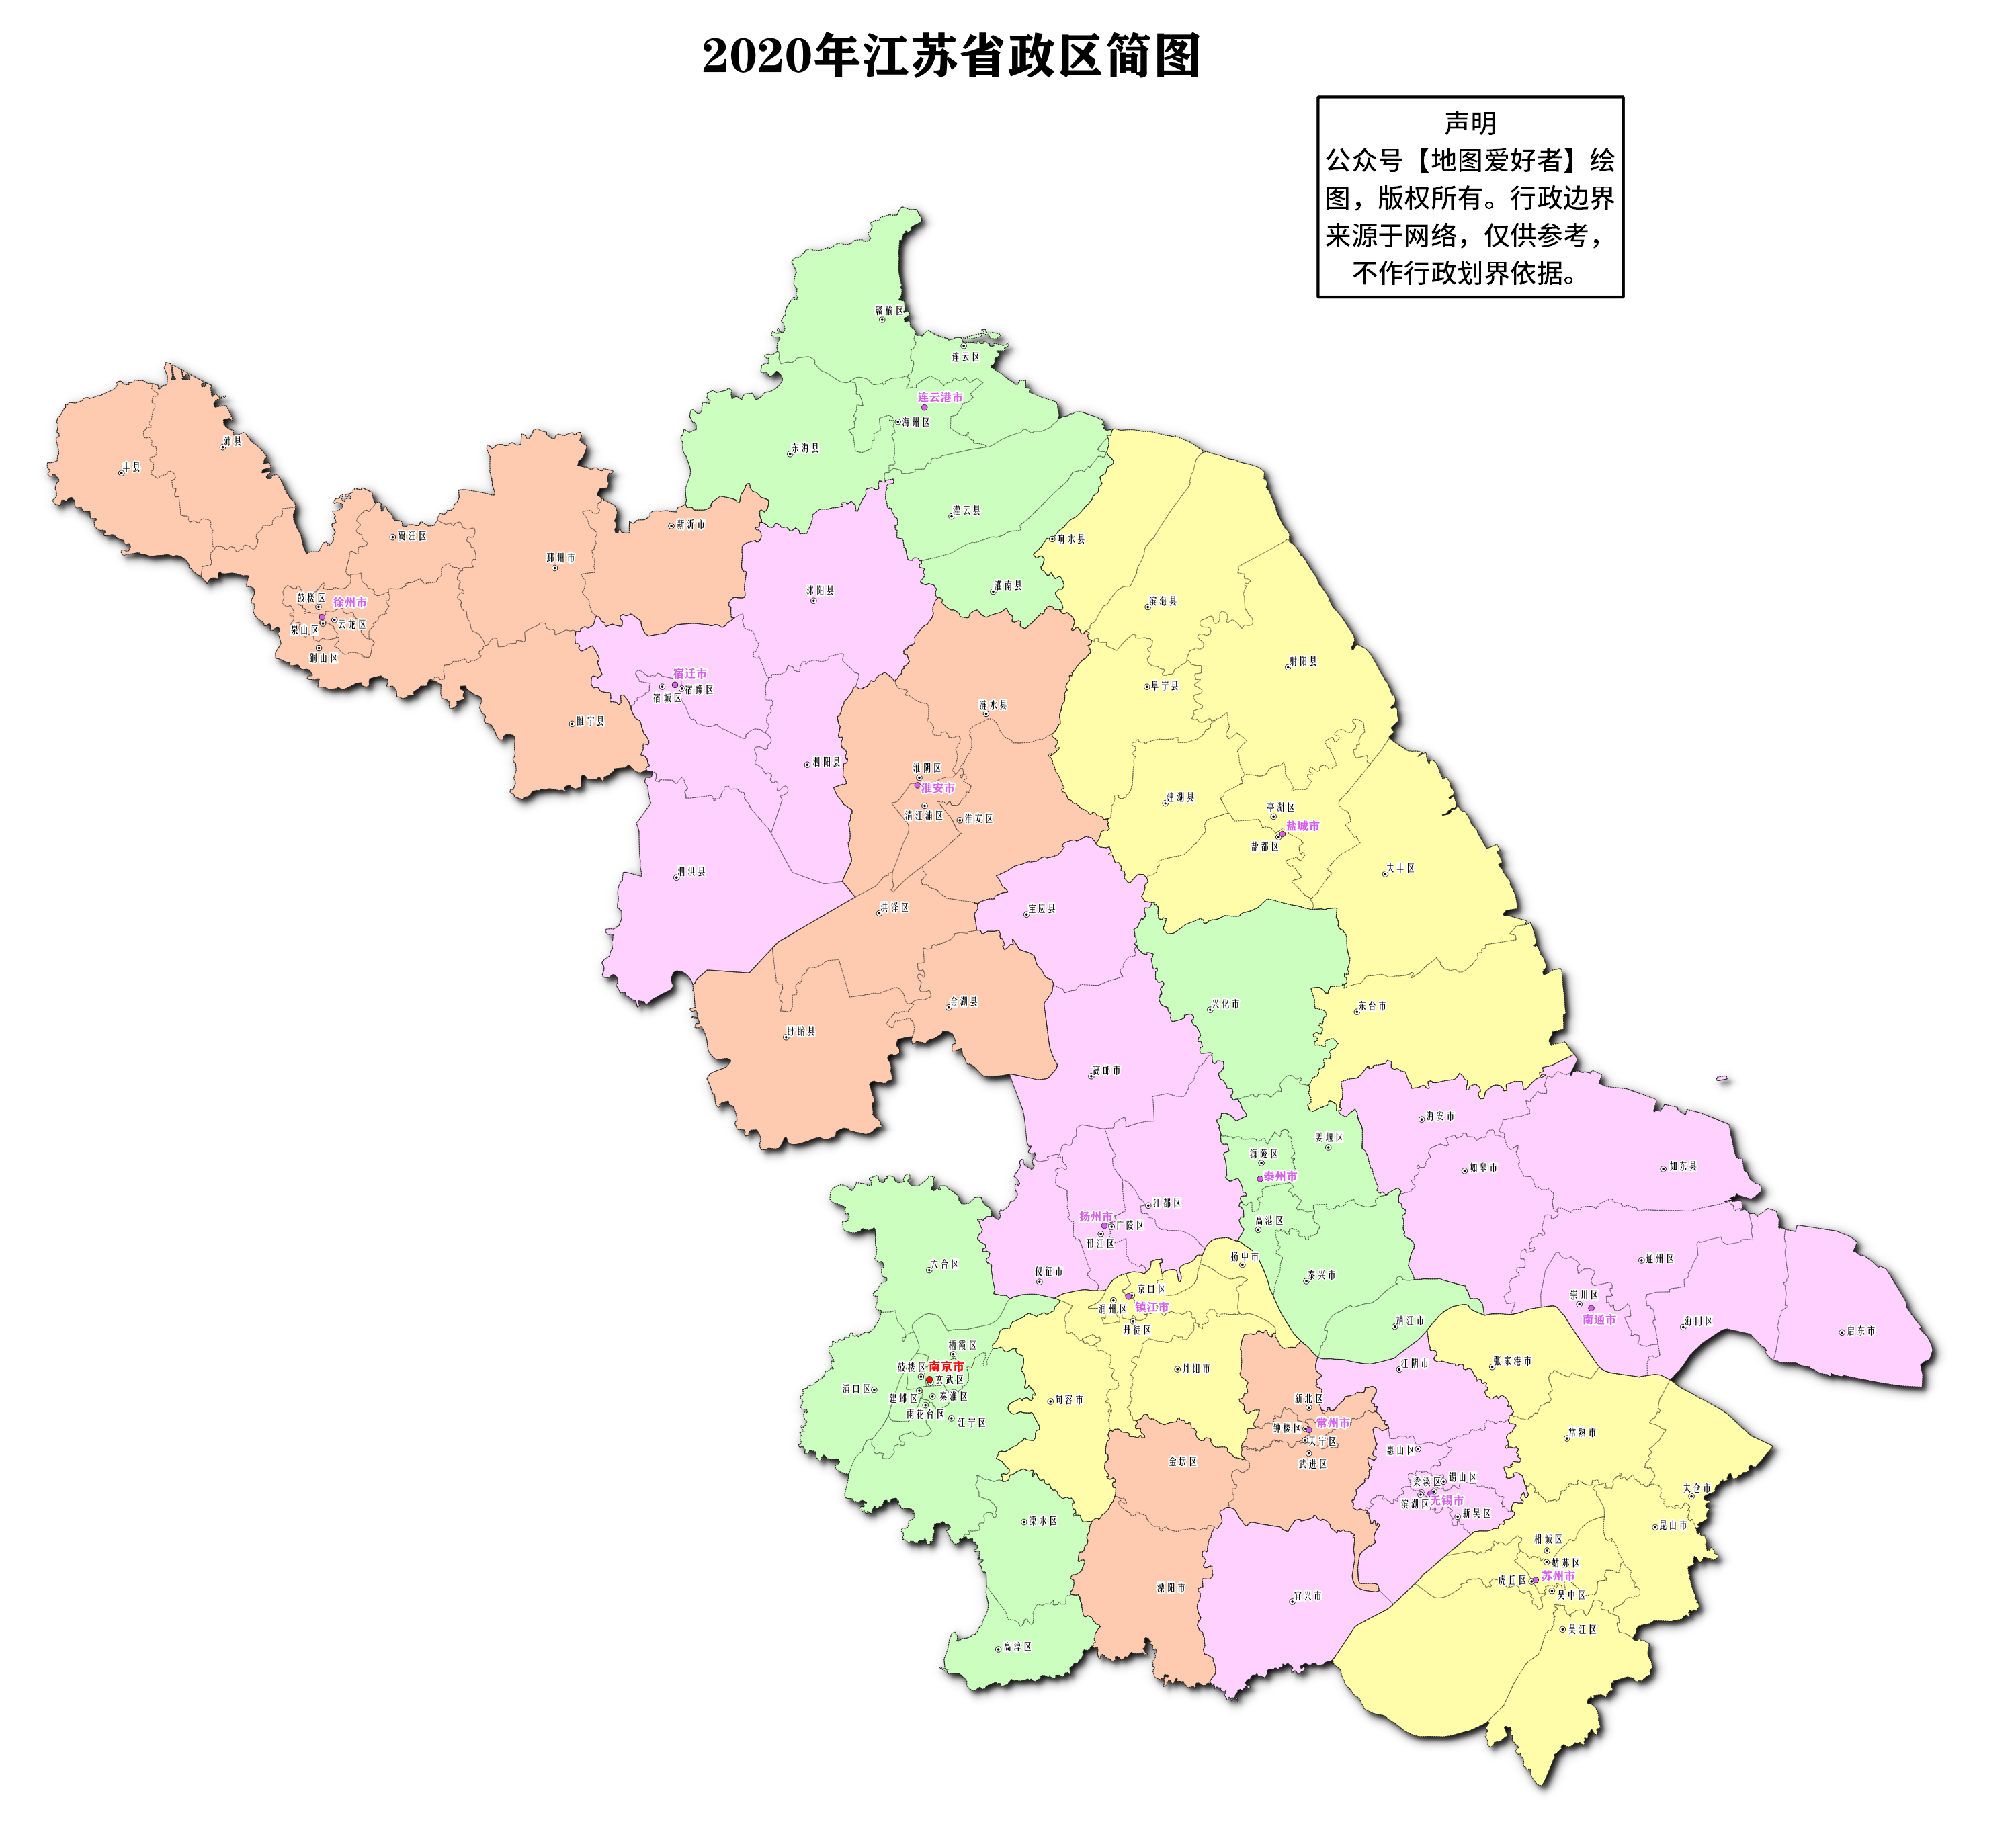 中国台湾省行政区划简图表示.百度网盘:链接:https://pan.baidu.